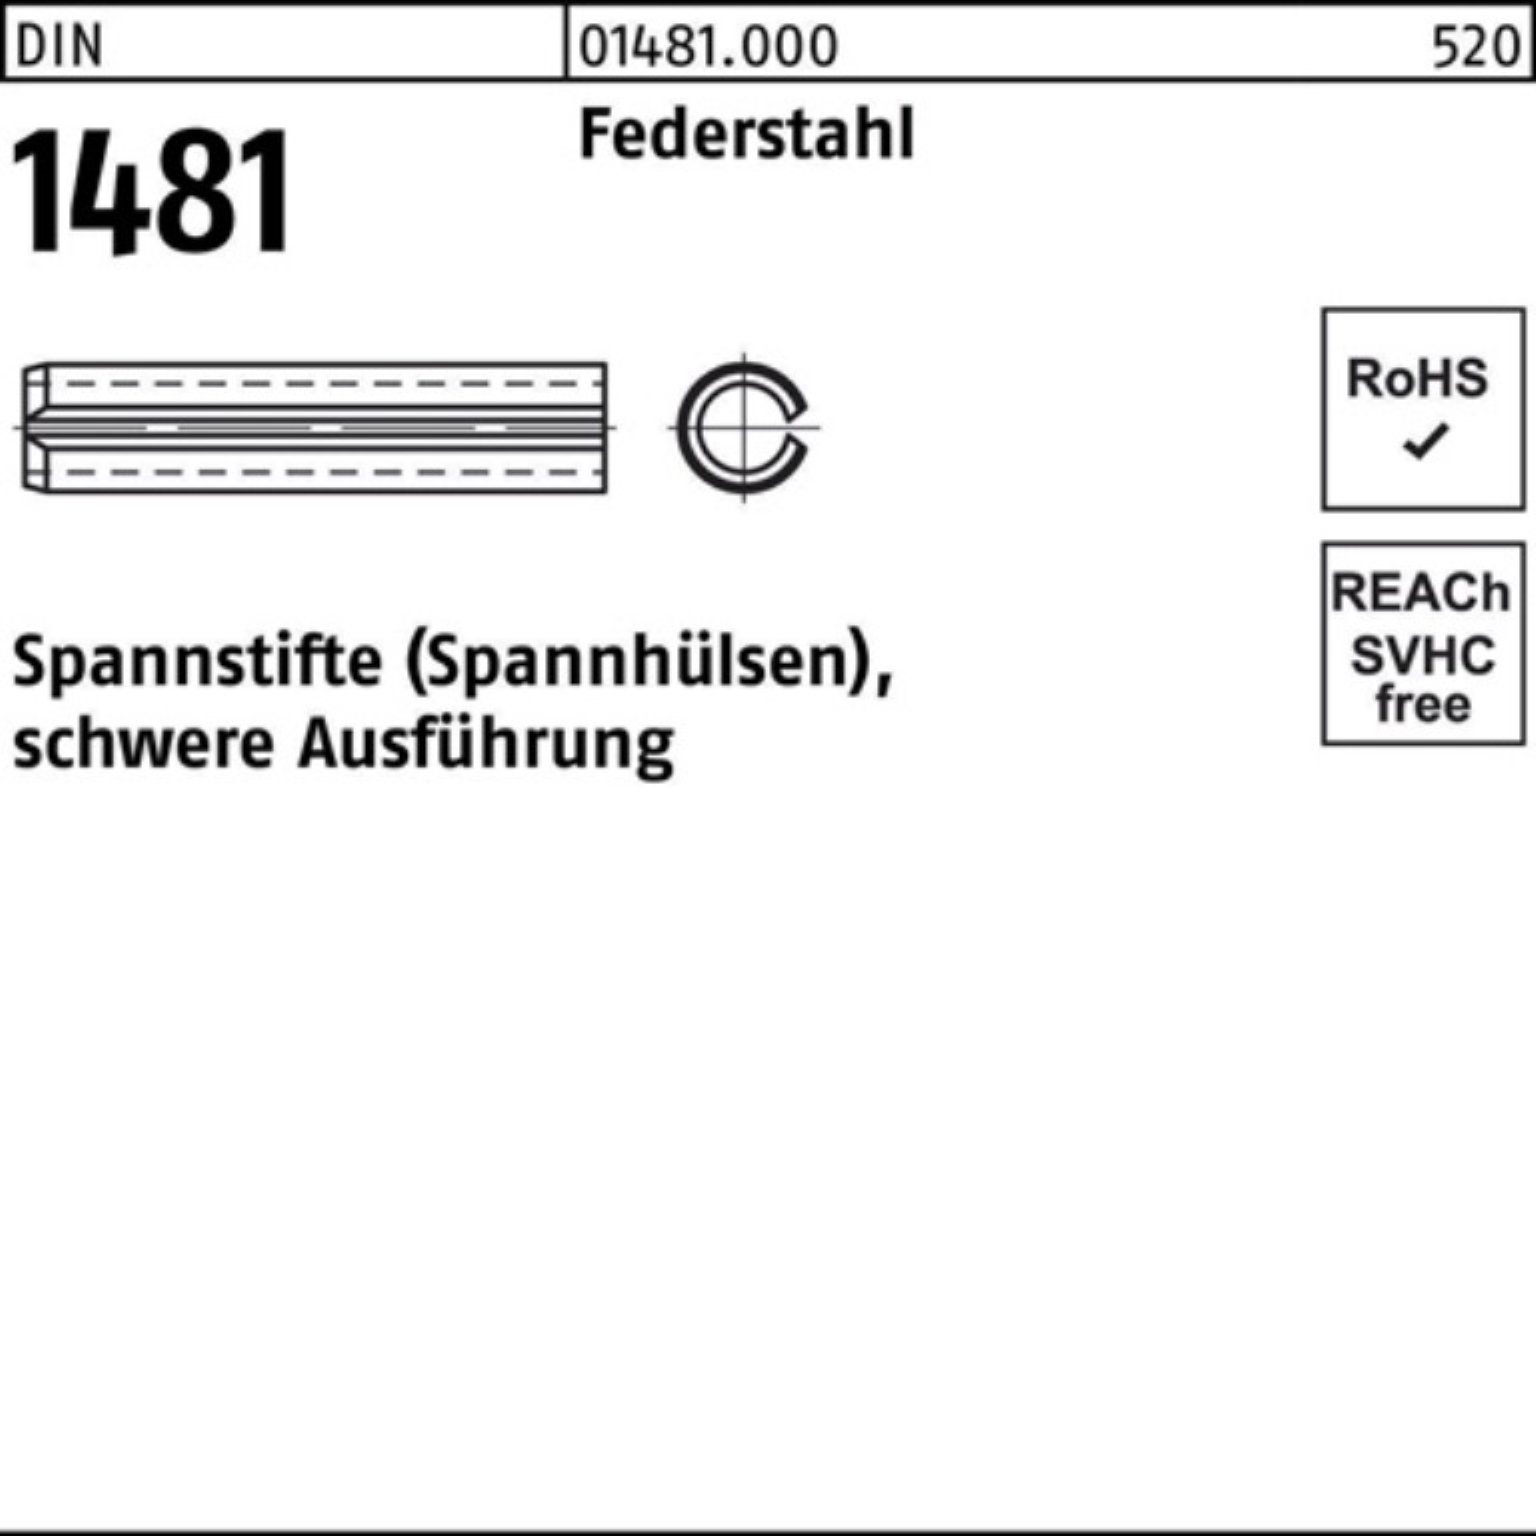 Reyher Spannstift 12x 30 Ausführung Spannstift 1481 schwere 100er DIN Federstahl Pack 2